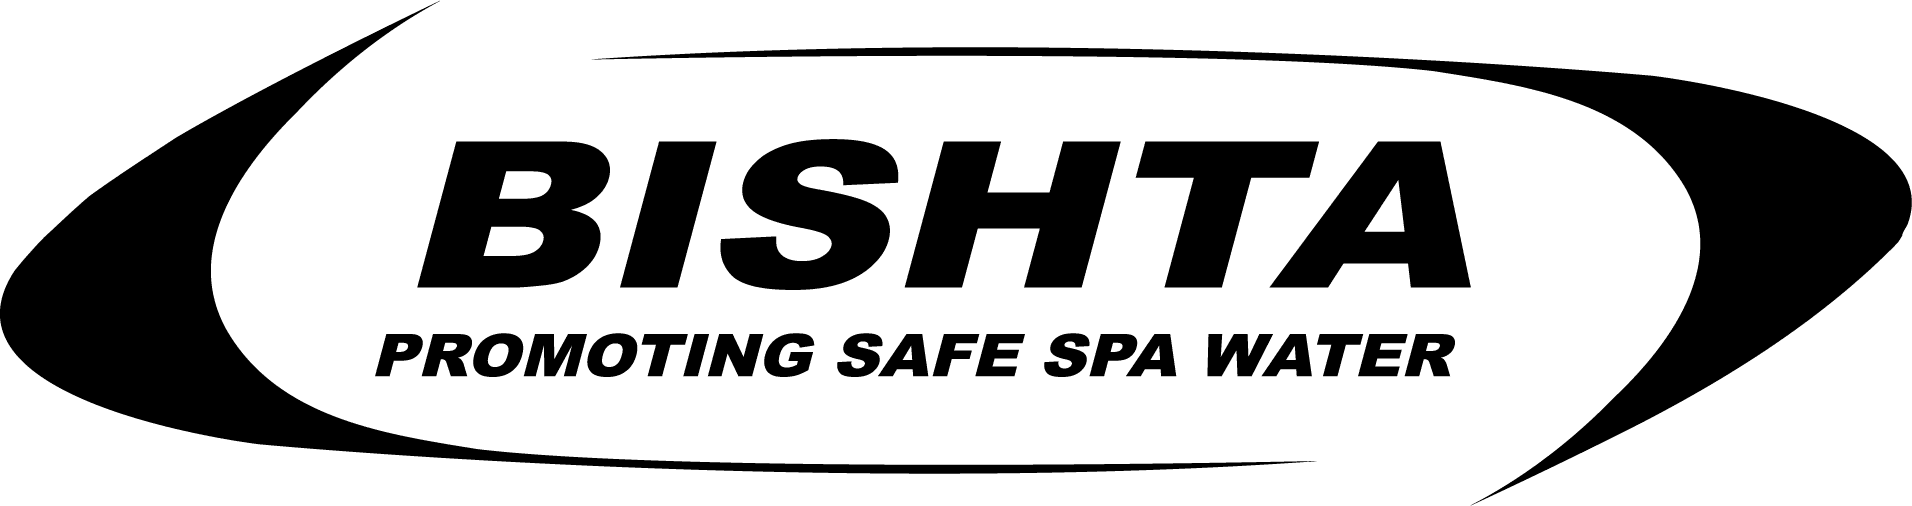 bishta promoting safe spa water logo